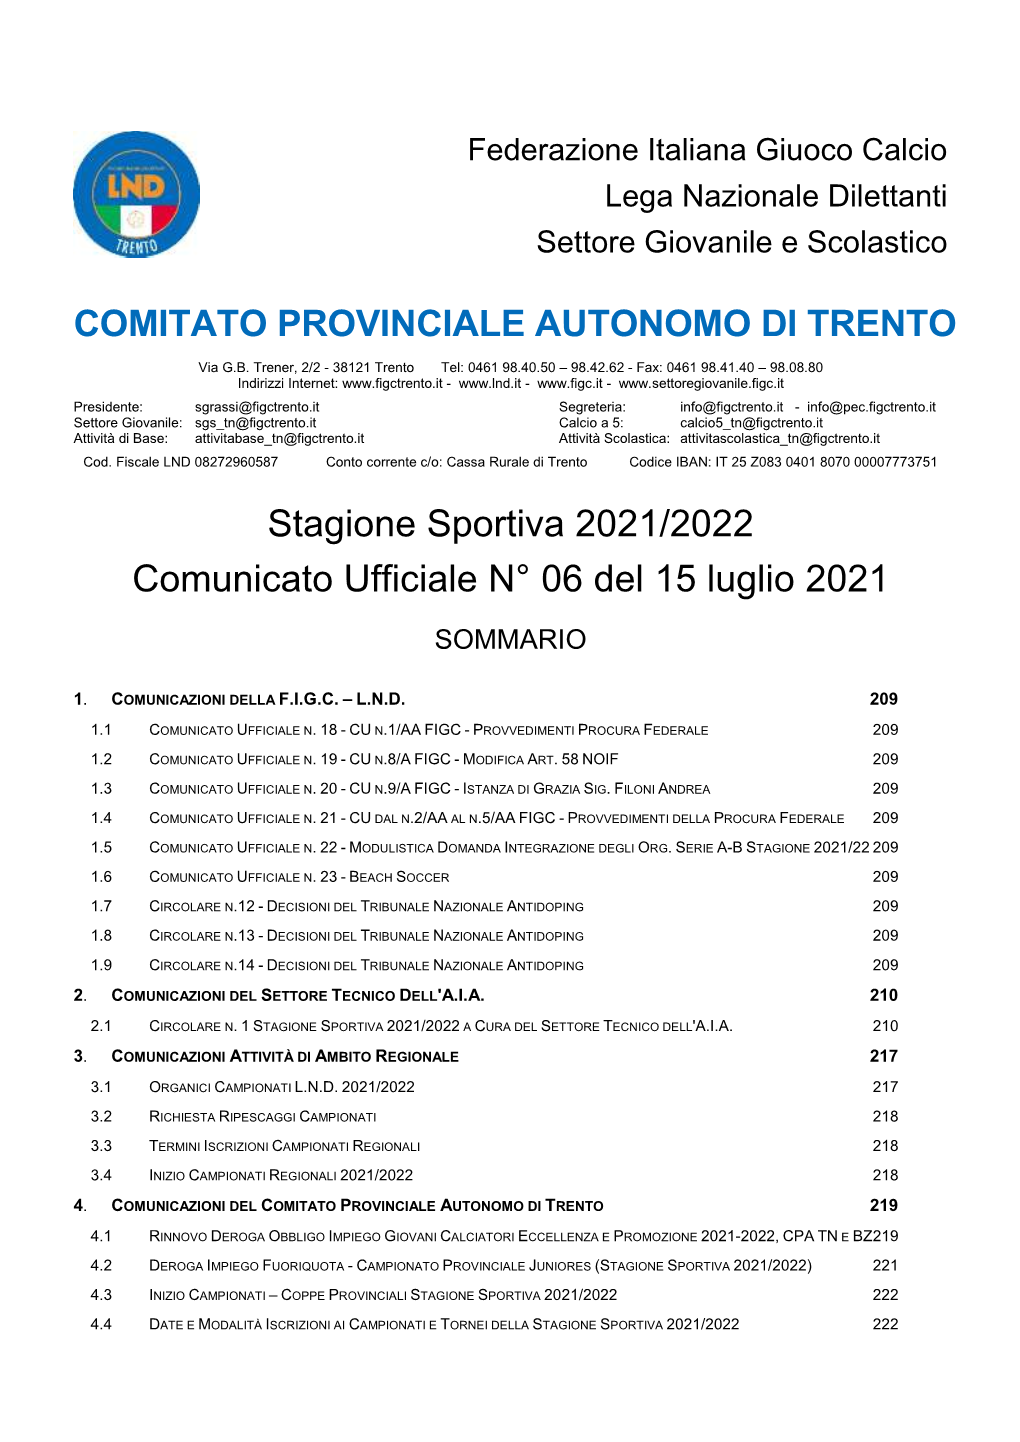 COMITATO PROVINCIALE AUTONOMO DI TRENTO Stagione Sportiva 2021/2022 Comunicato Ufficiale N° 06 Del 15 Luglio 2021